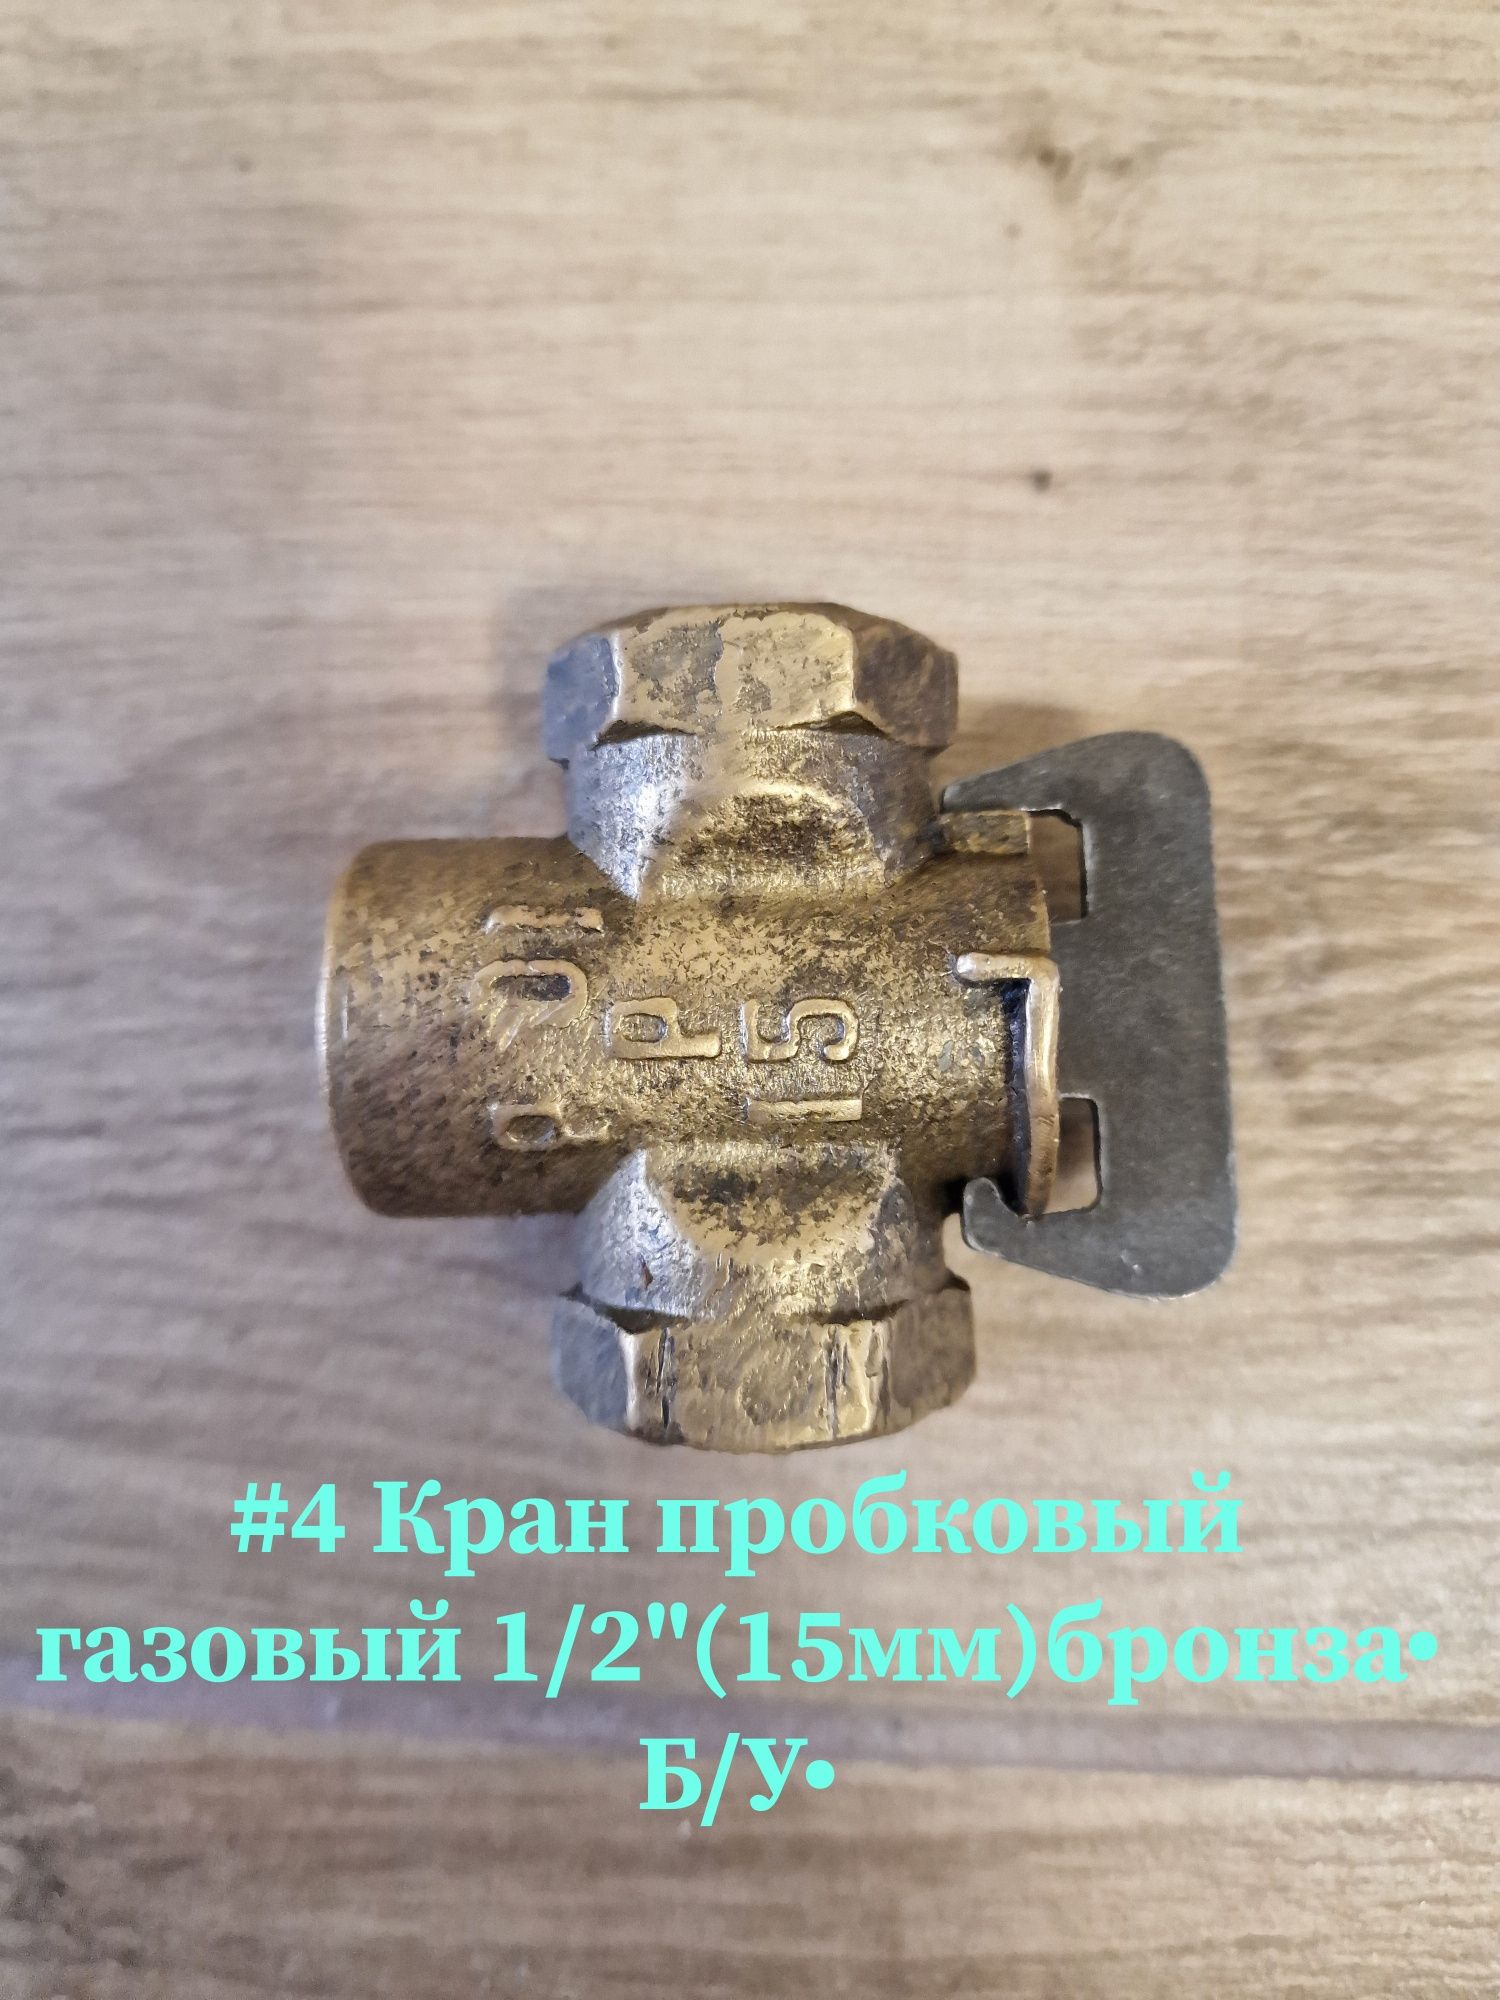 •Моно кран Латунь•1/2"•Вода 75грн•Olx доставкой Укр,Новая!!!